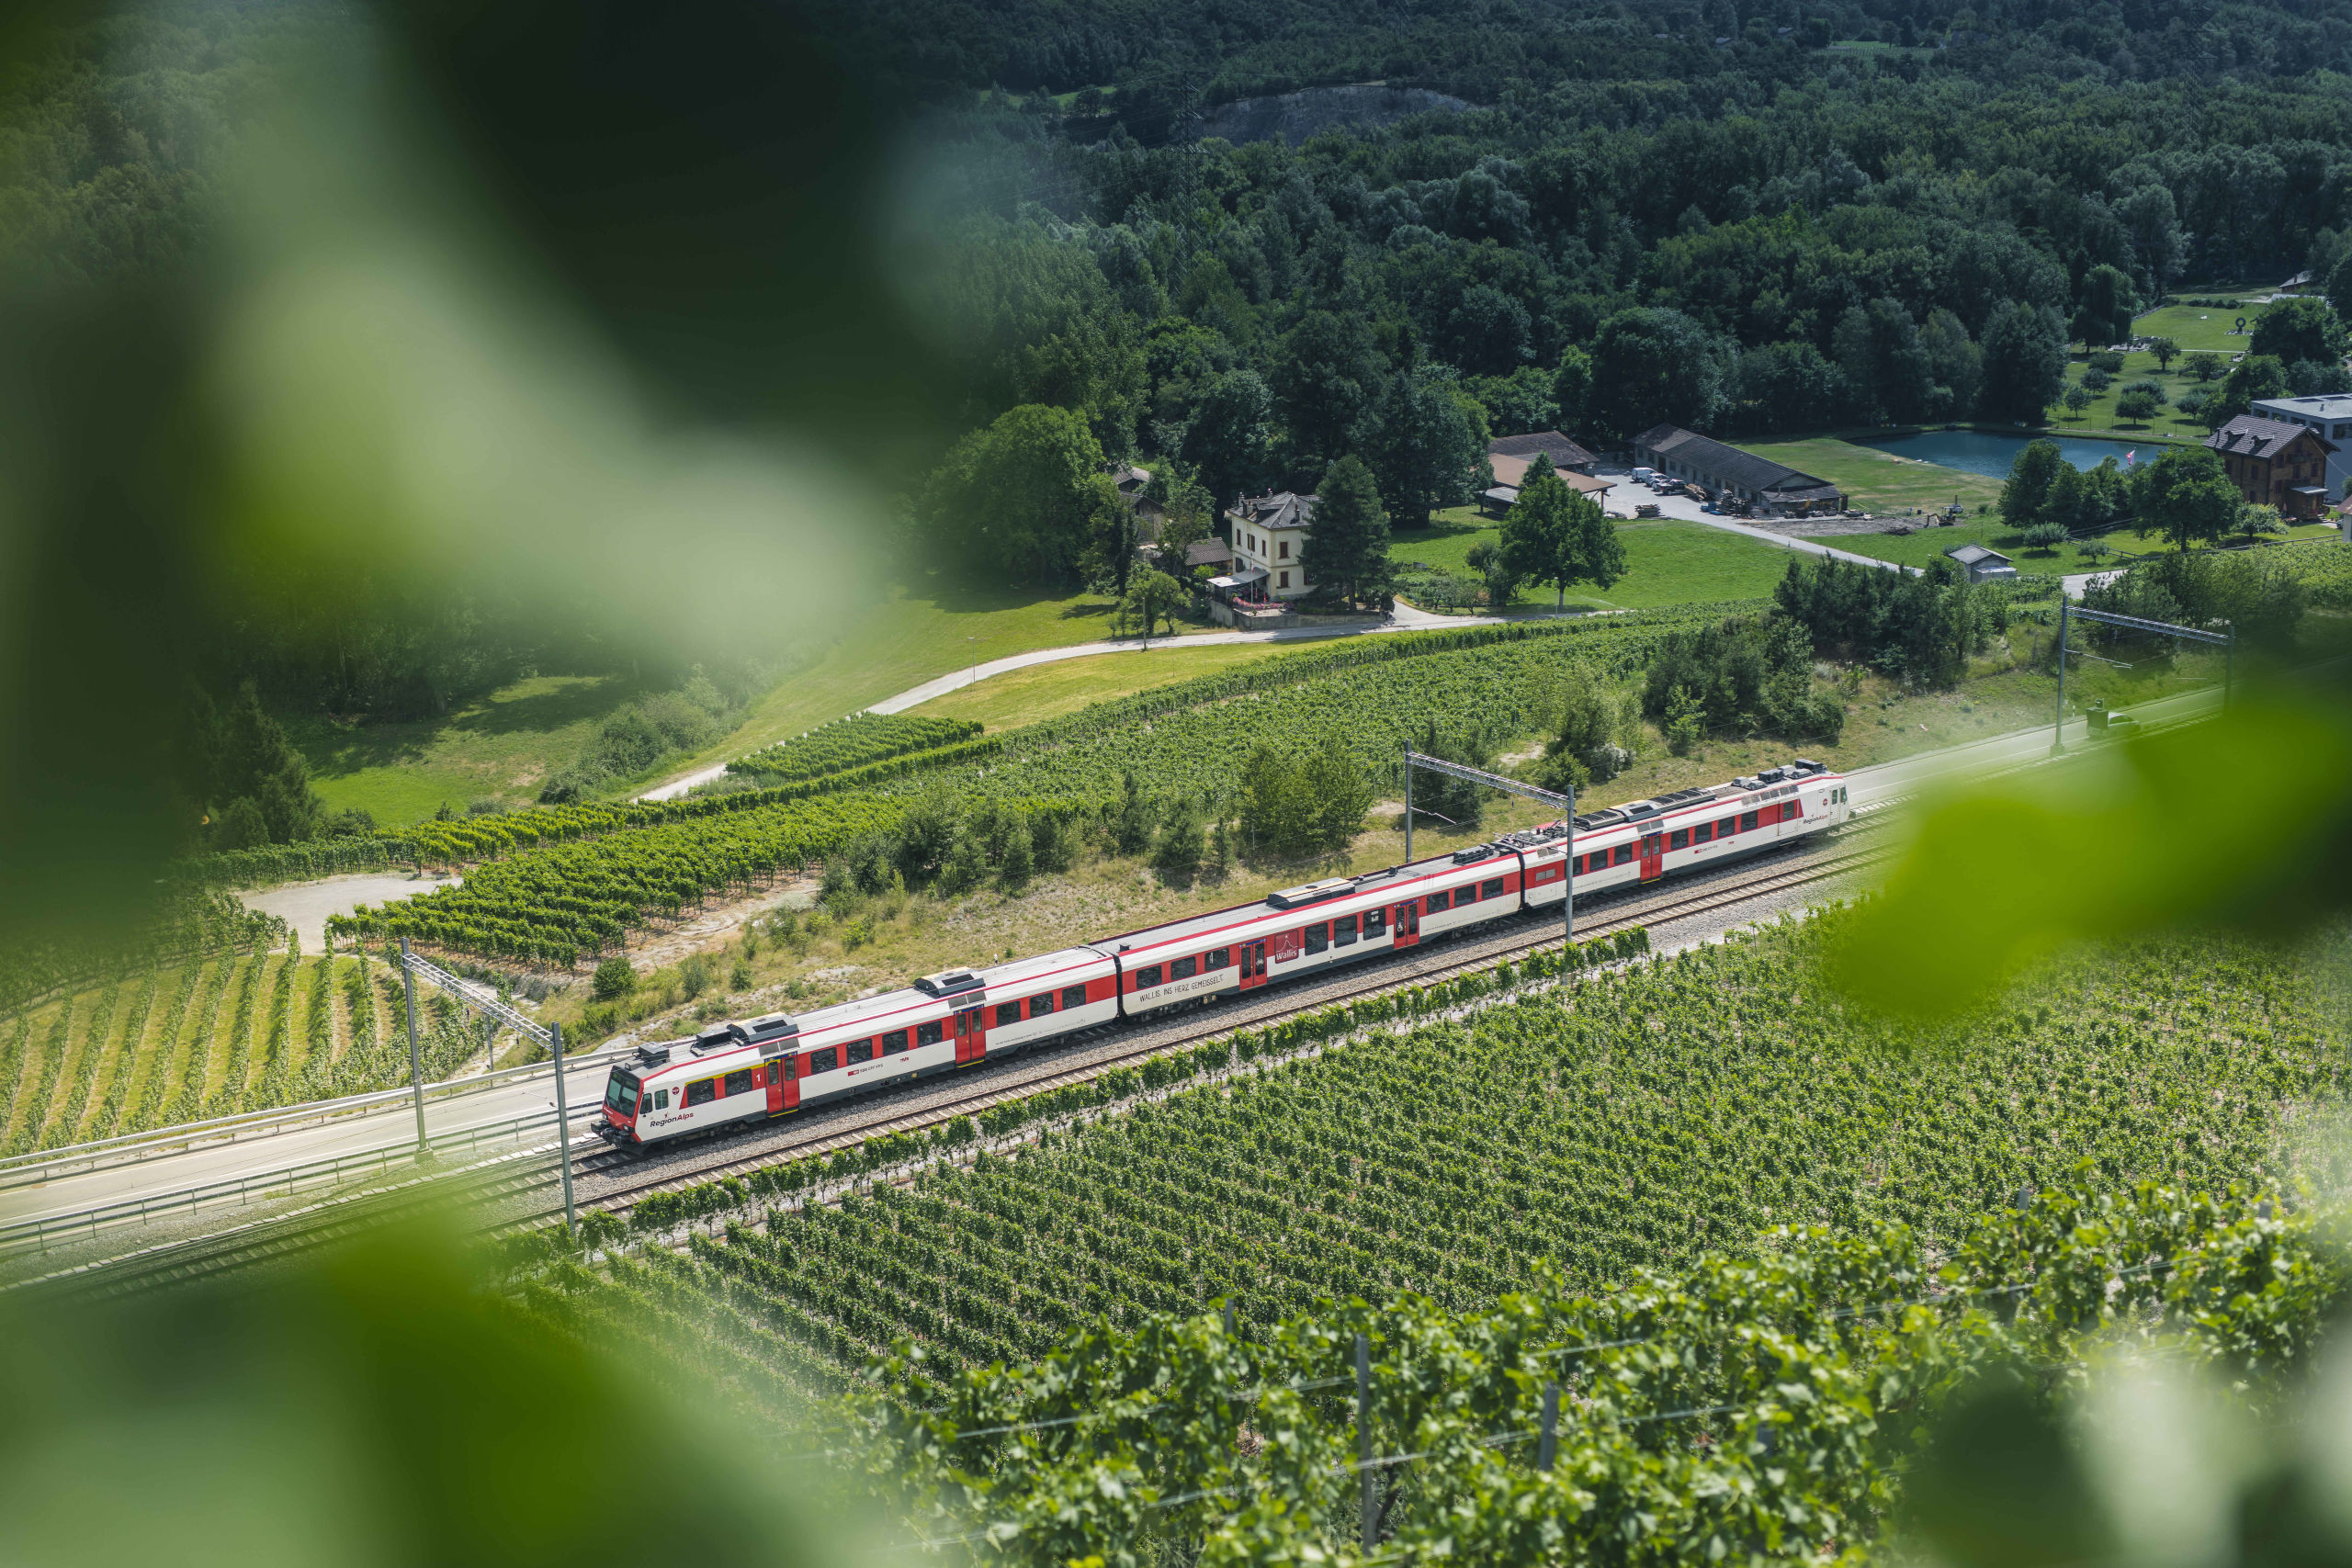 Valais regional train in the vineyards of Salquenen in the Sierre region, Valais, Switzerland